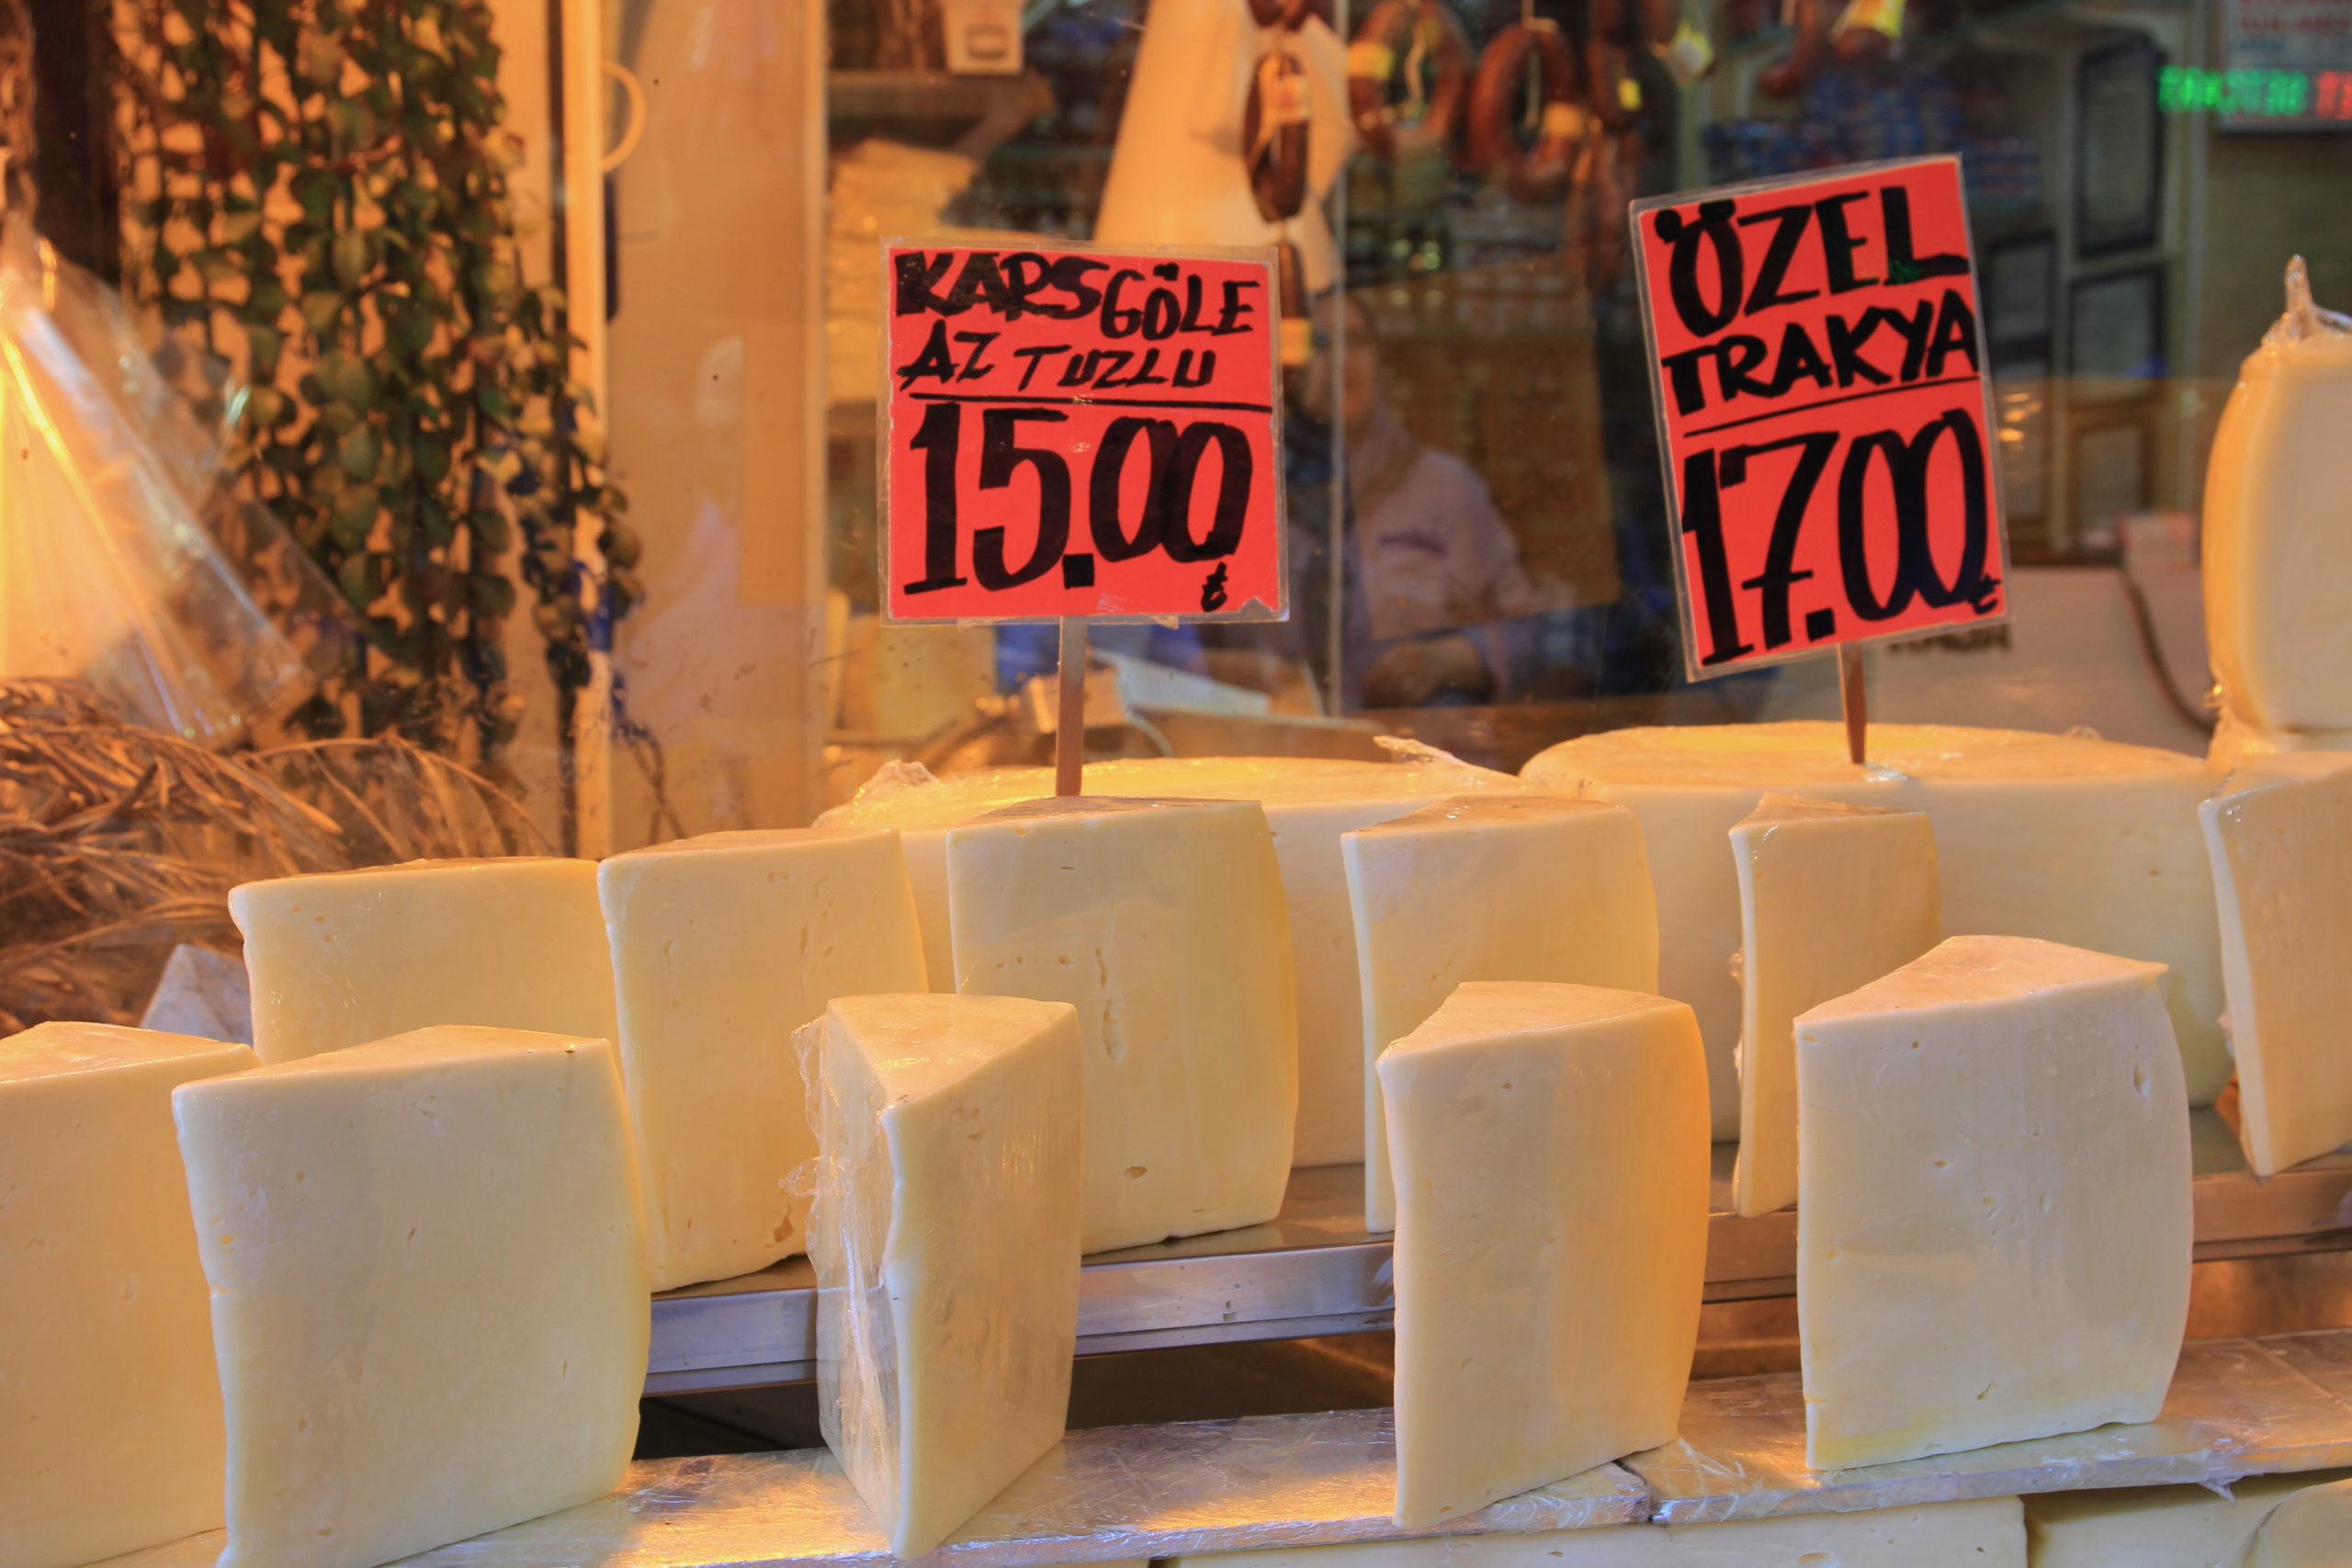 トルコのチーズ